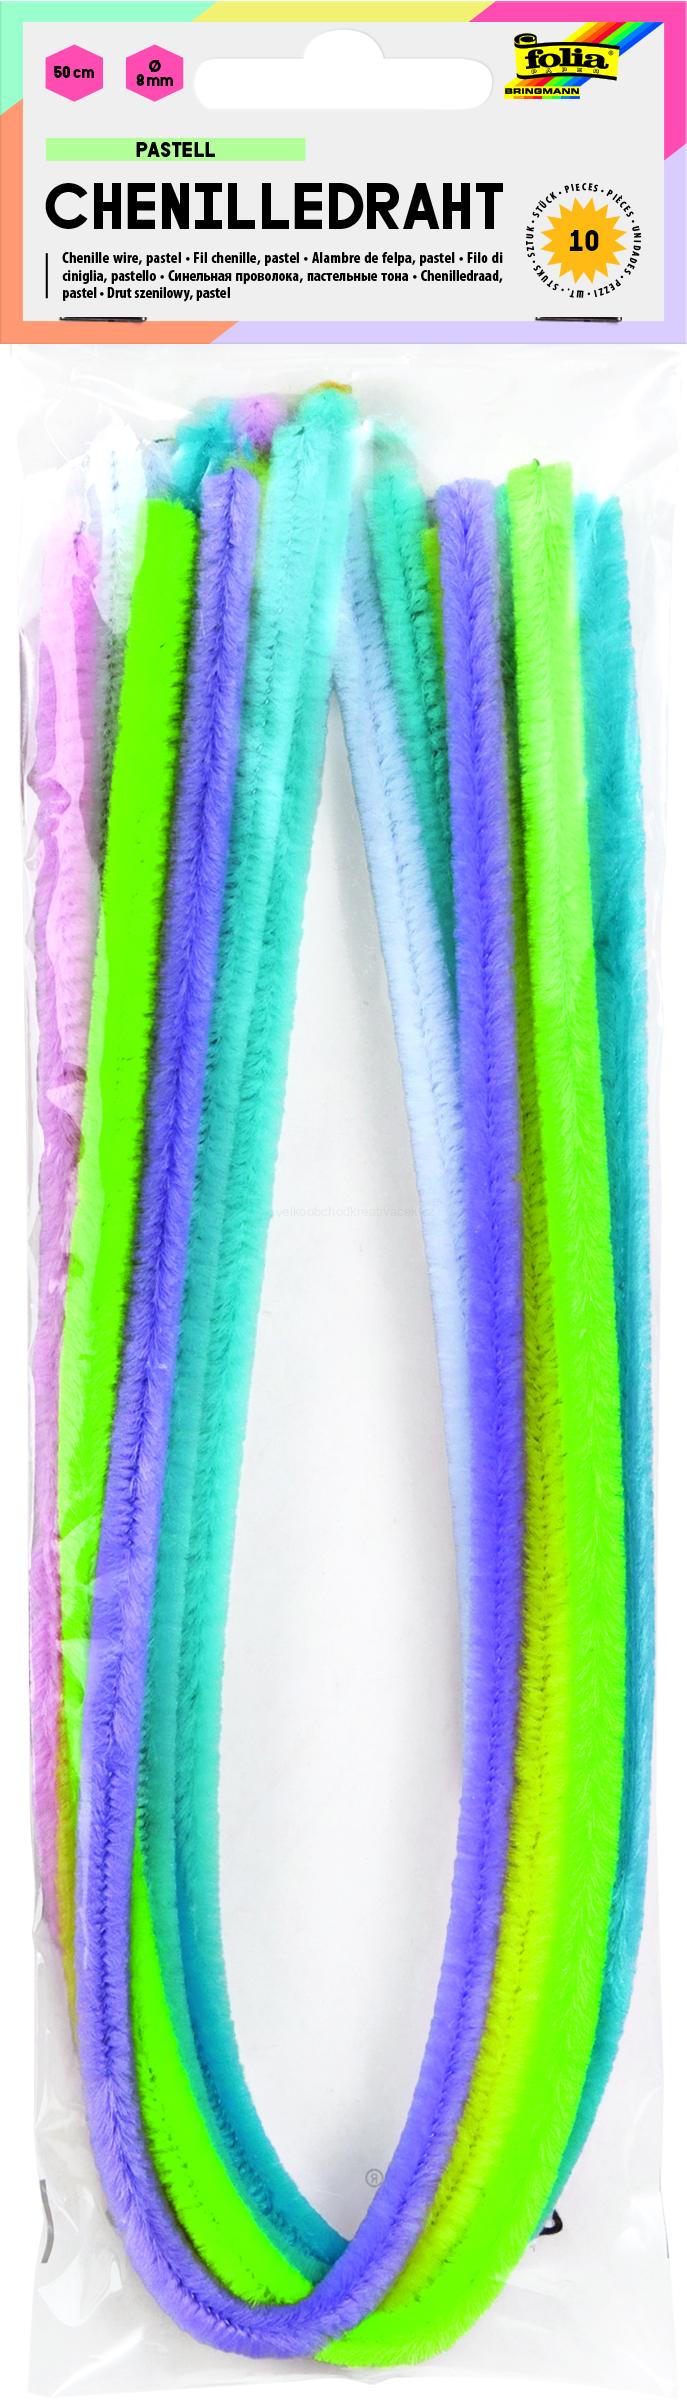 Žinylkové modelovací drátky - 50 cm - barvy pastelové